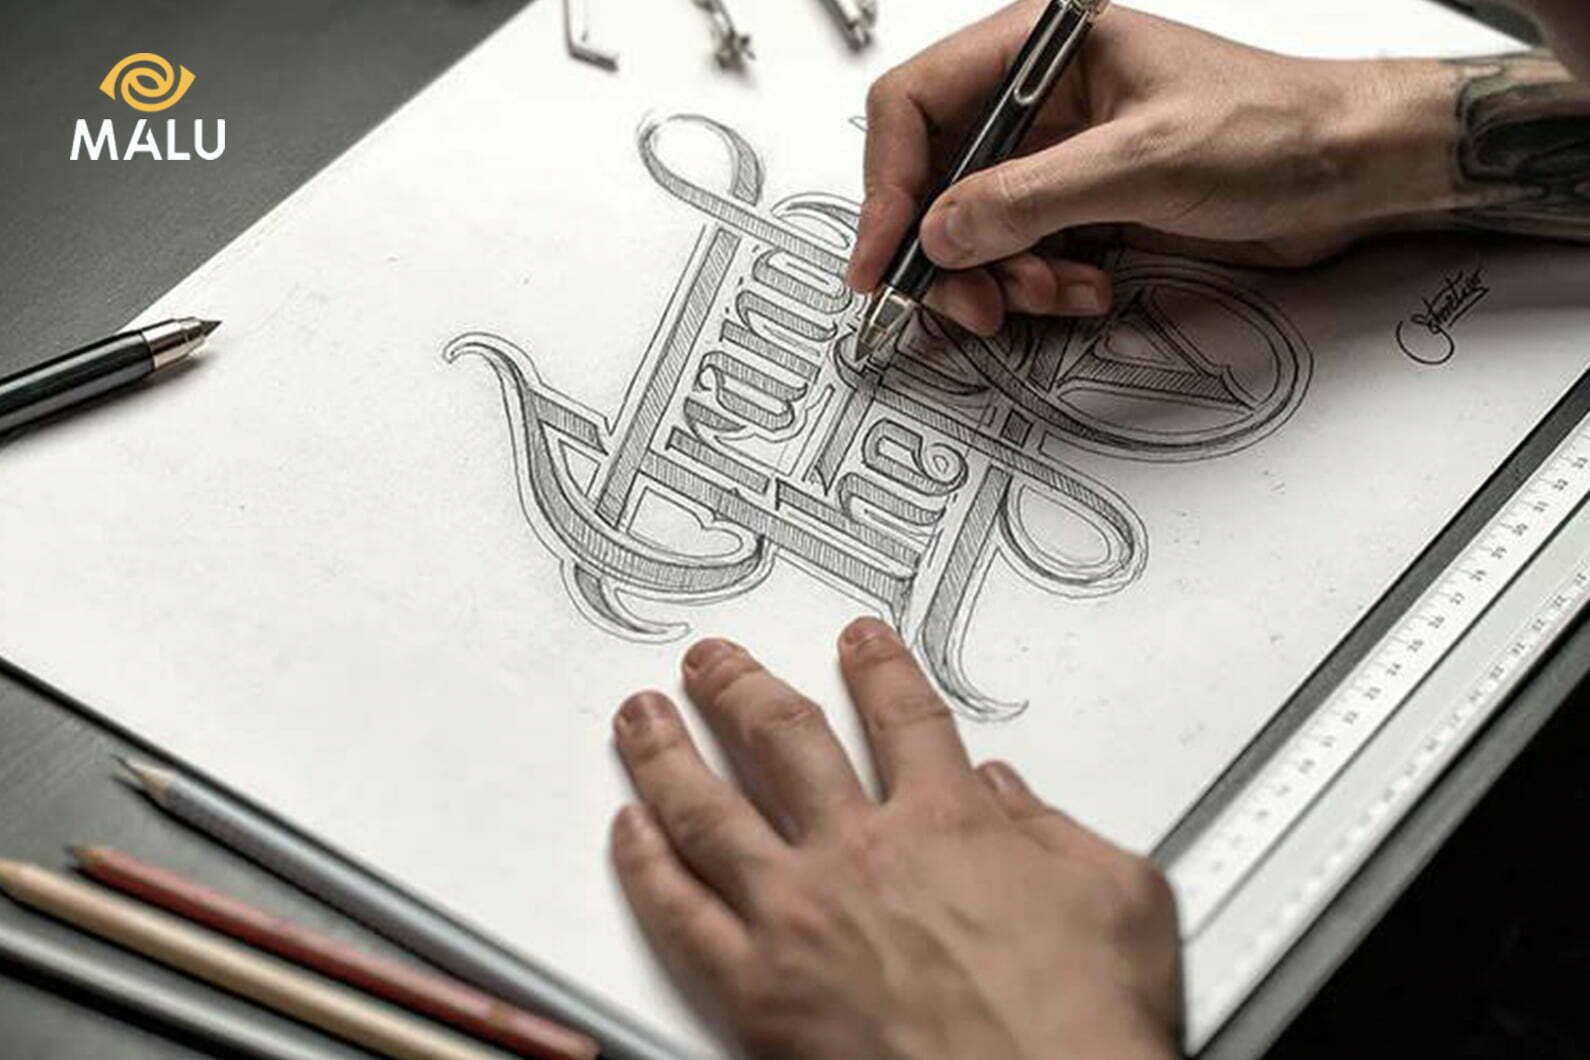 Hand-drawn logo: Một chiếc logo vẽ tay sẽ mang đến cái nhìn tự nhiên và độc đáo cho thương hiệu của bạn. Xem ngay hình ảnh về hand-drawn logo liên quan để cảm nhận được sự độc đáo và tinh tế của thiết kế, và chắc chắn sẽ không làm bạn thất vọng.